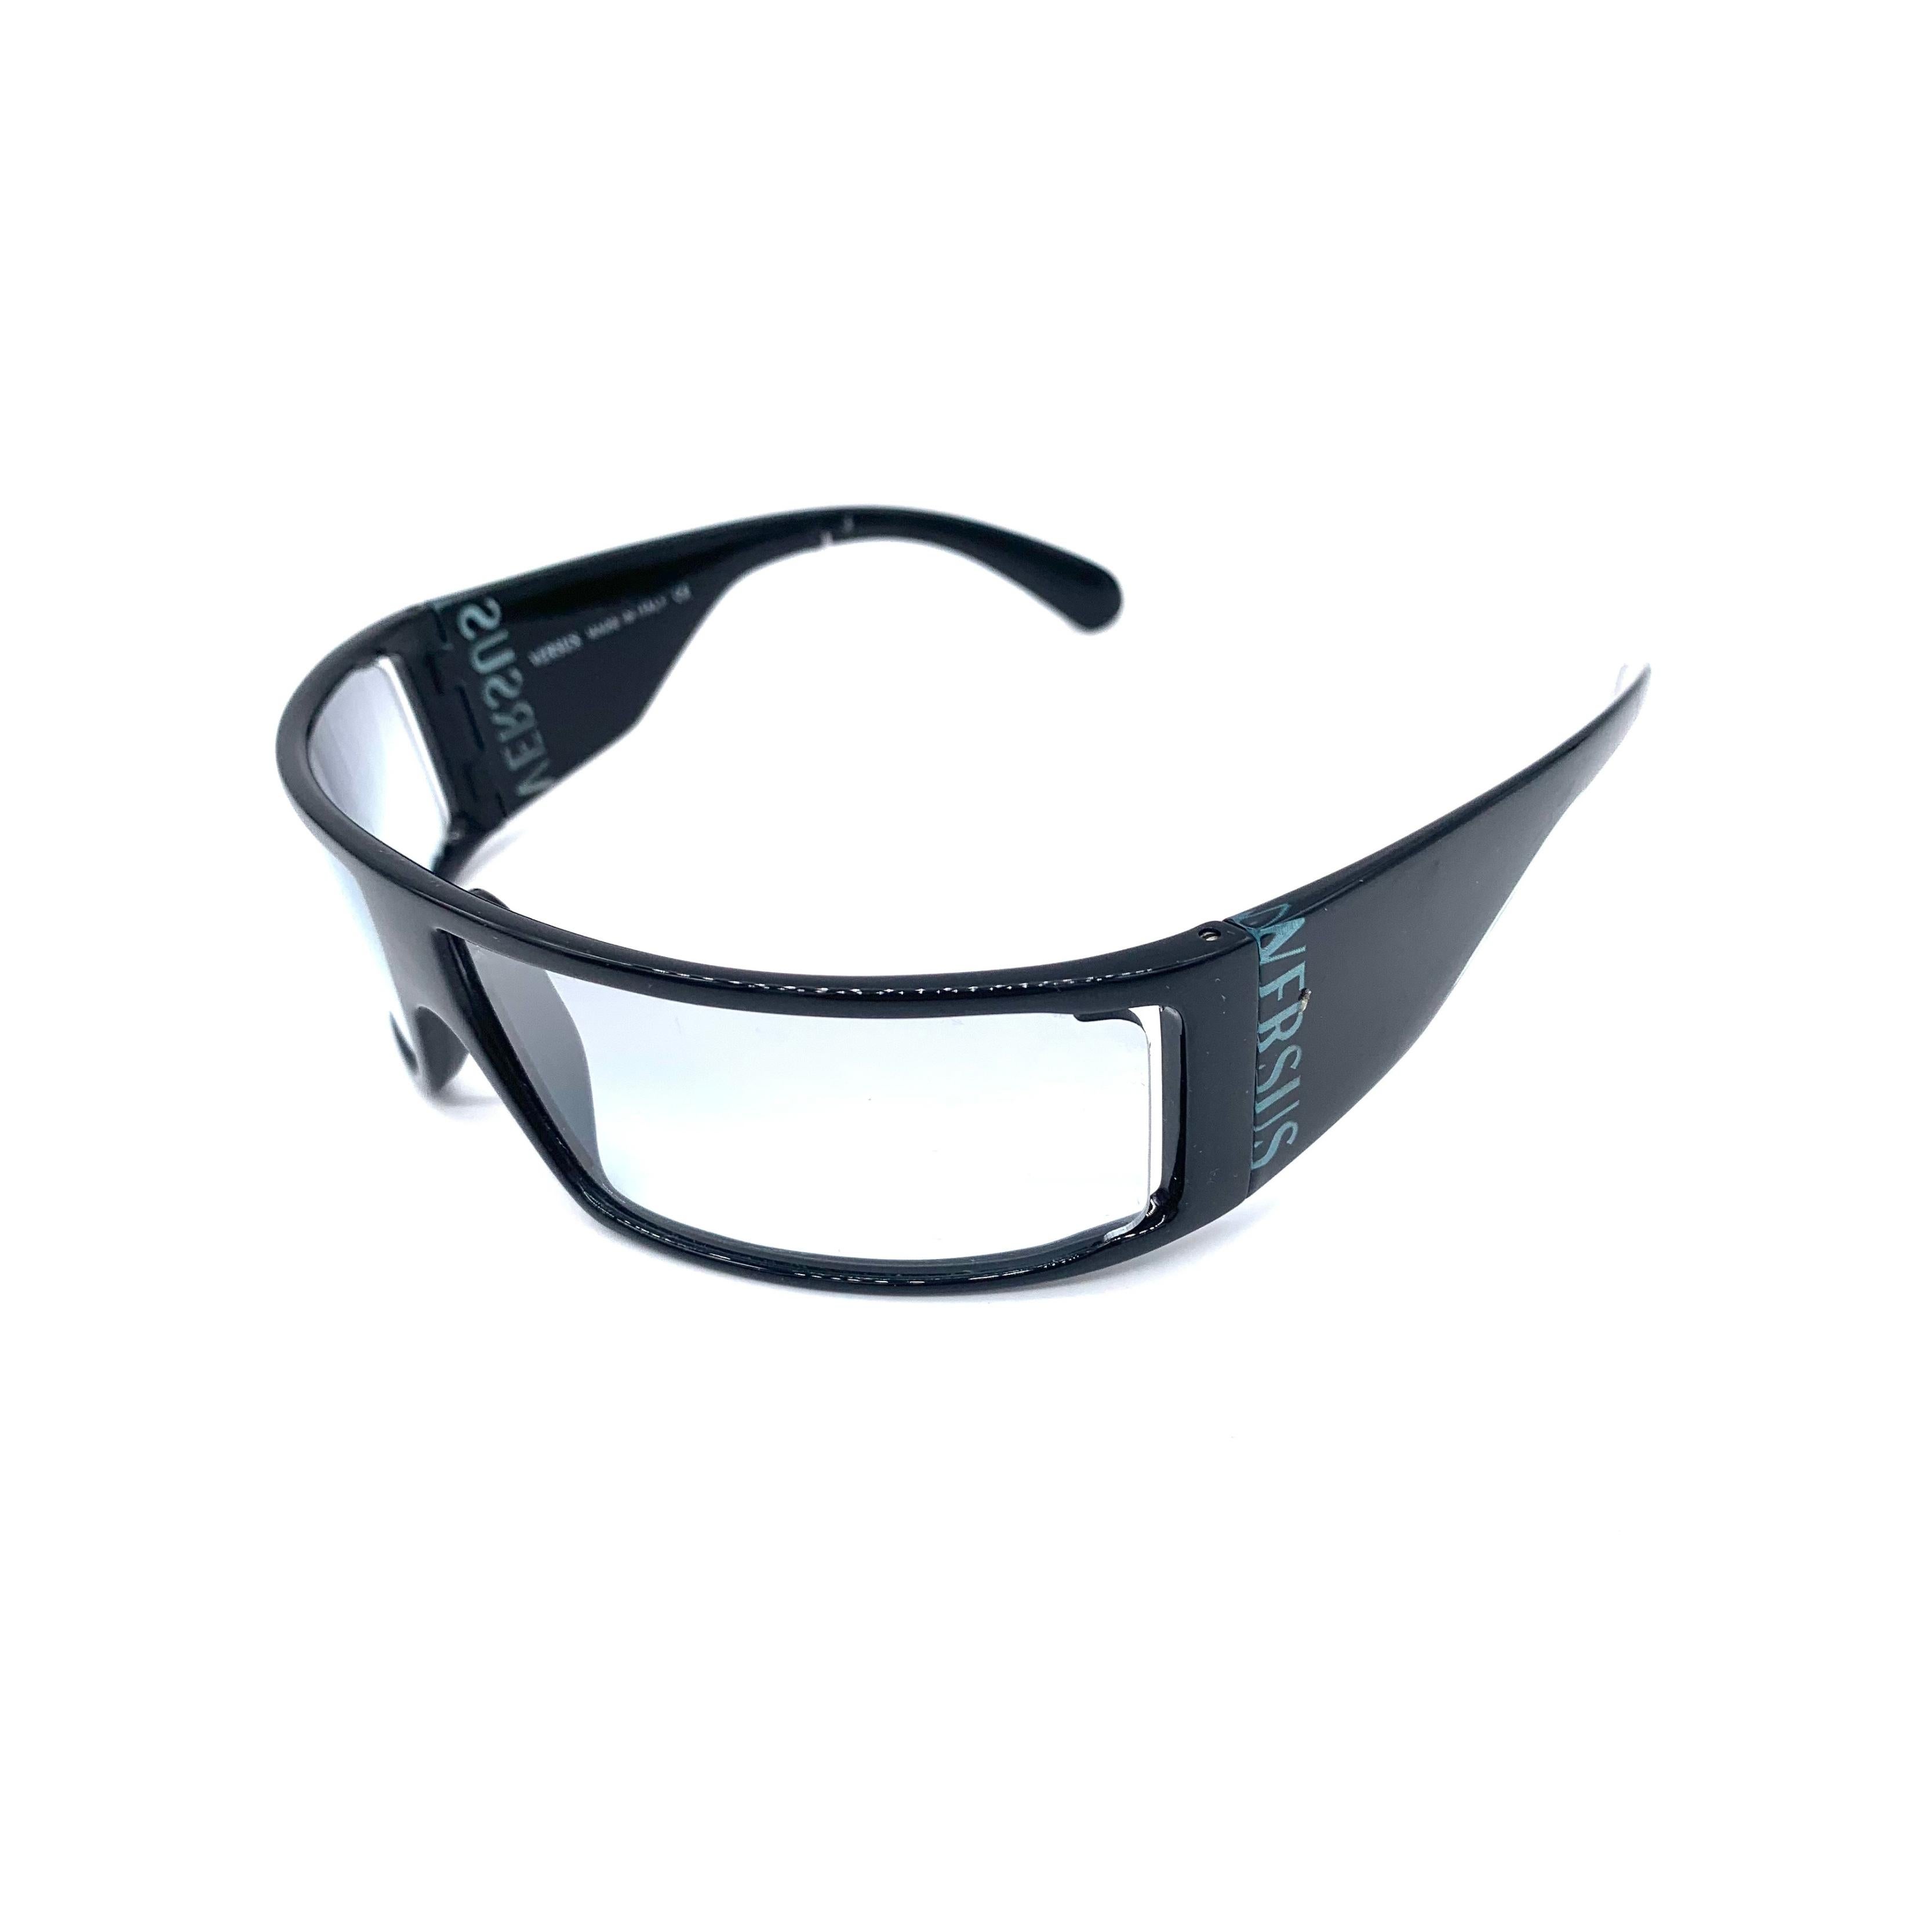 Diese klassische Versus Acetat-Sonnenbrille aus den 1990er Jahren hat einen breiten schwarzen Rahmen und klare Gläser. Das kultige Versus-Logo ist diskret an der Seite angebracht und macht sie zu einem zeitlosen Modestatement. Gefertigt aus